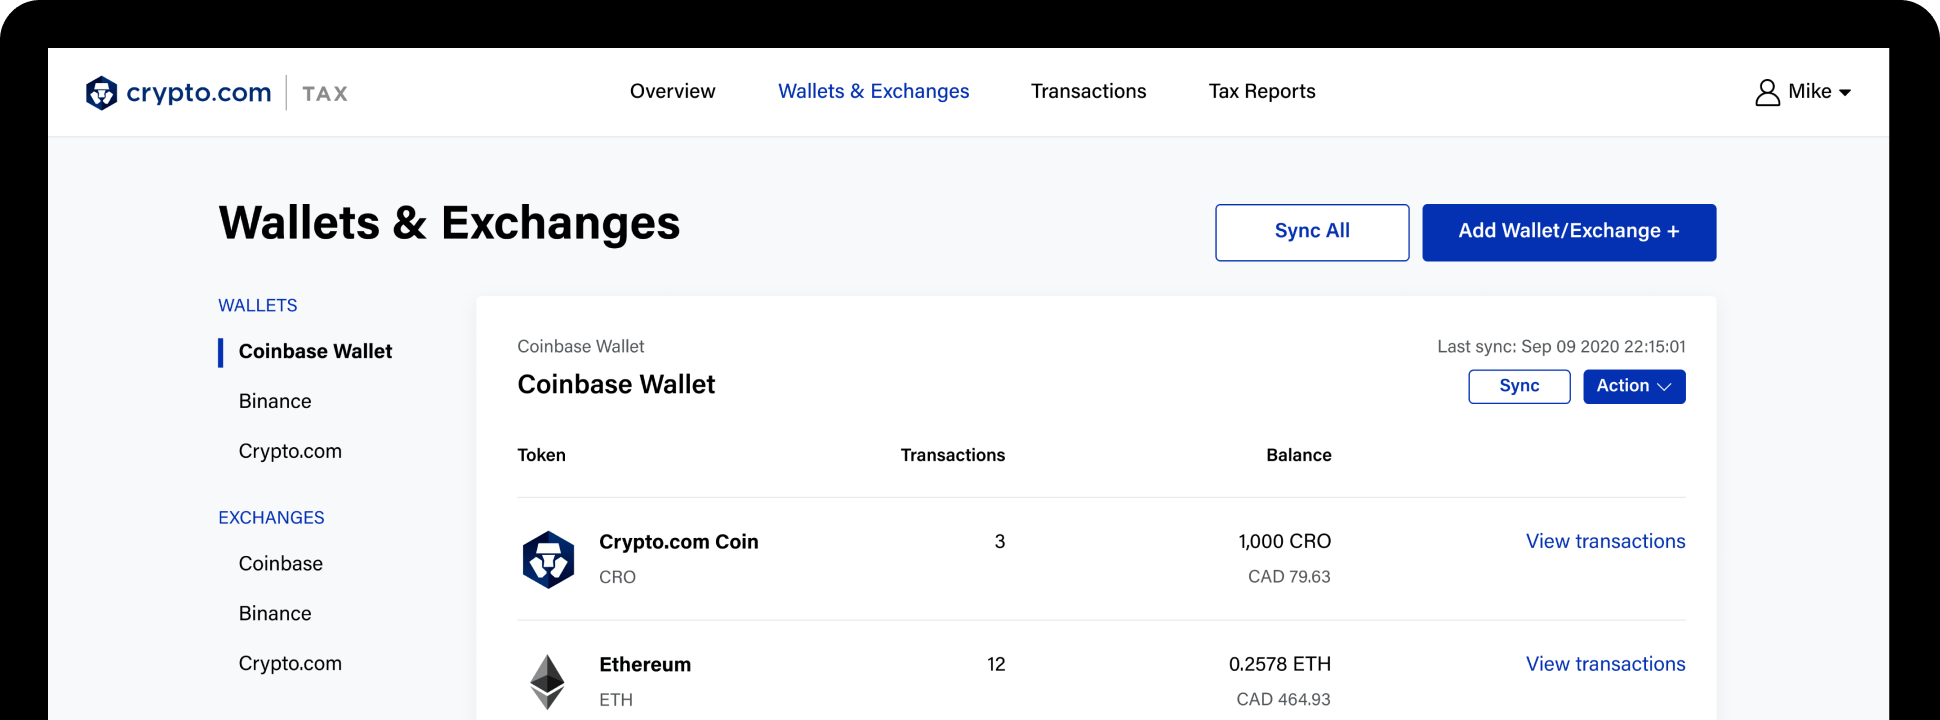 Crypto.com Tax Screenshot